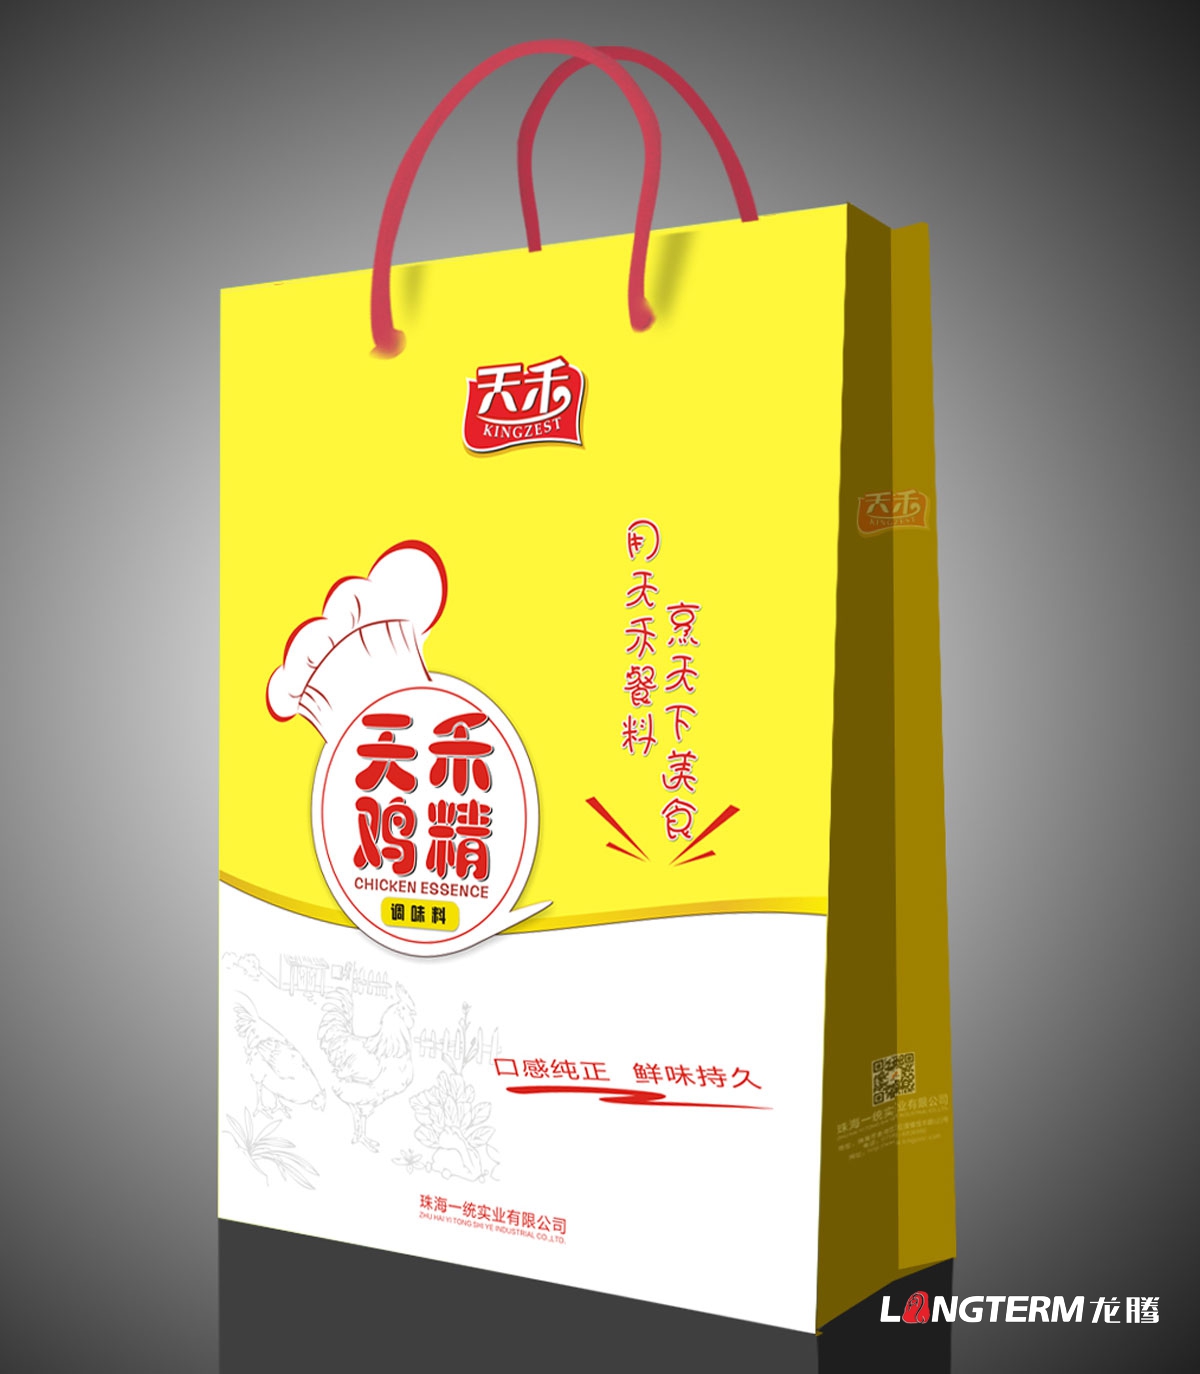 天禾鸡精包装设计|四川成都味精鸡精调料包装设计|简装袋装海报手提袋包装设计